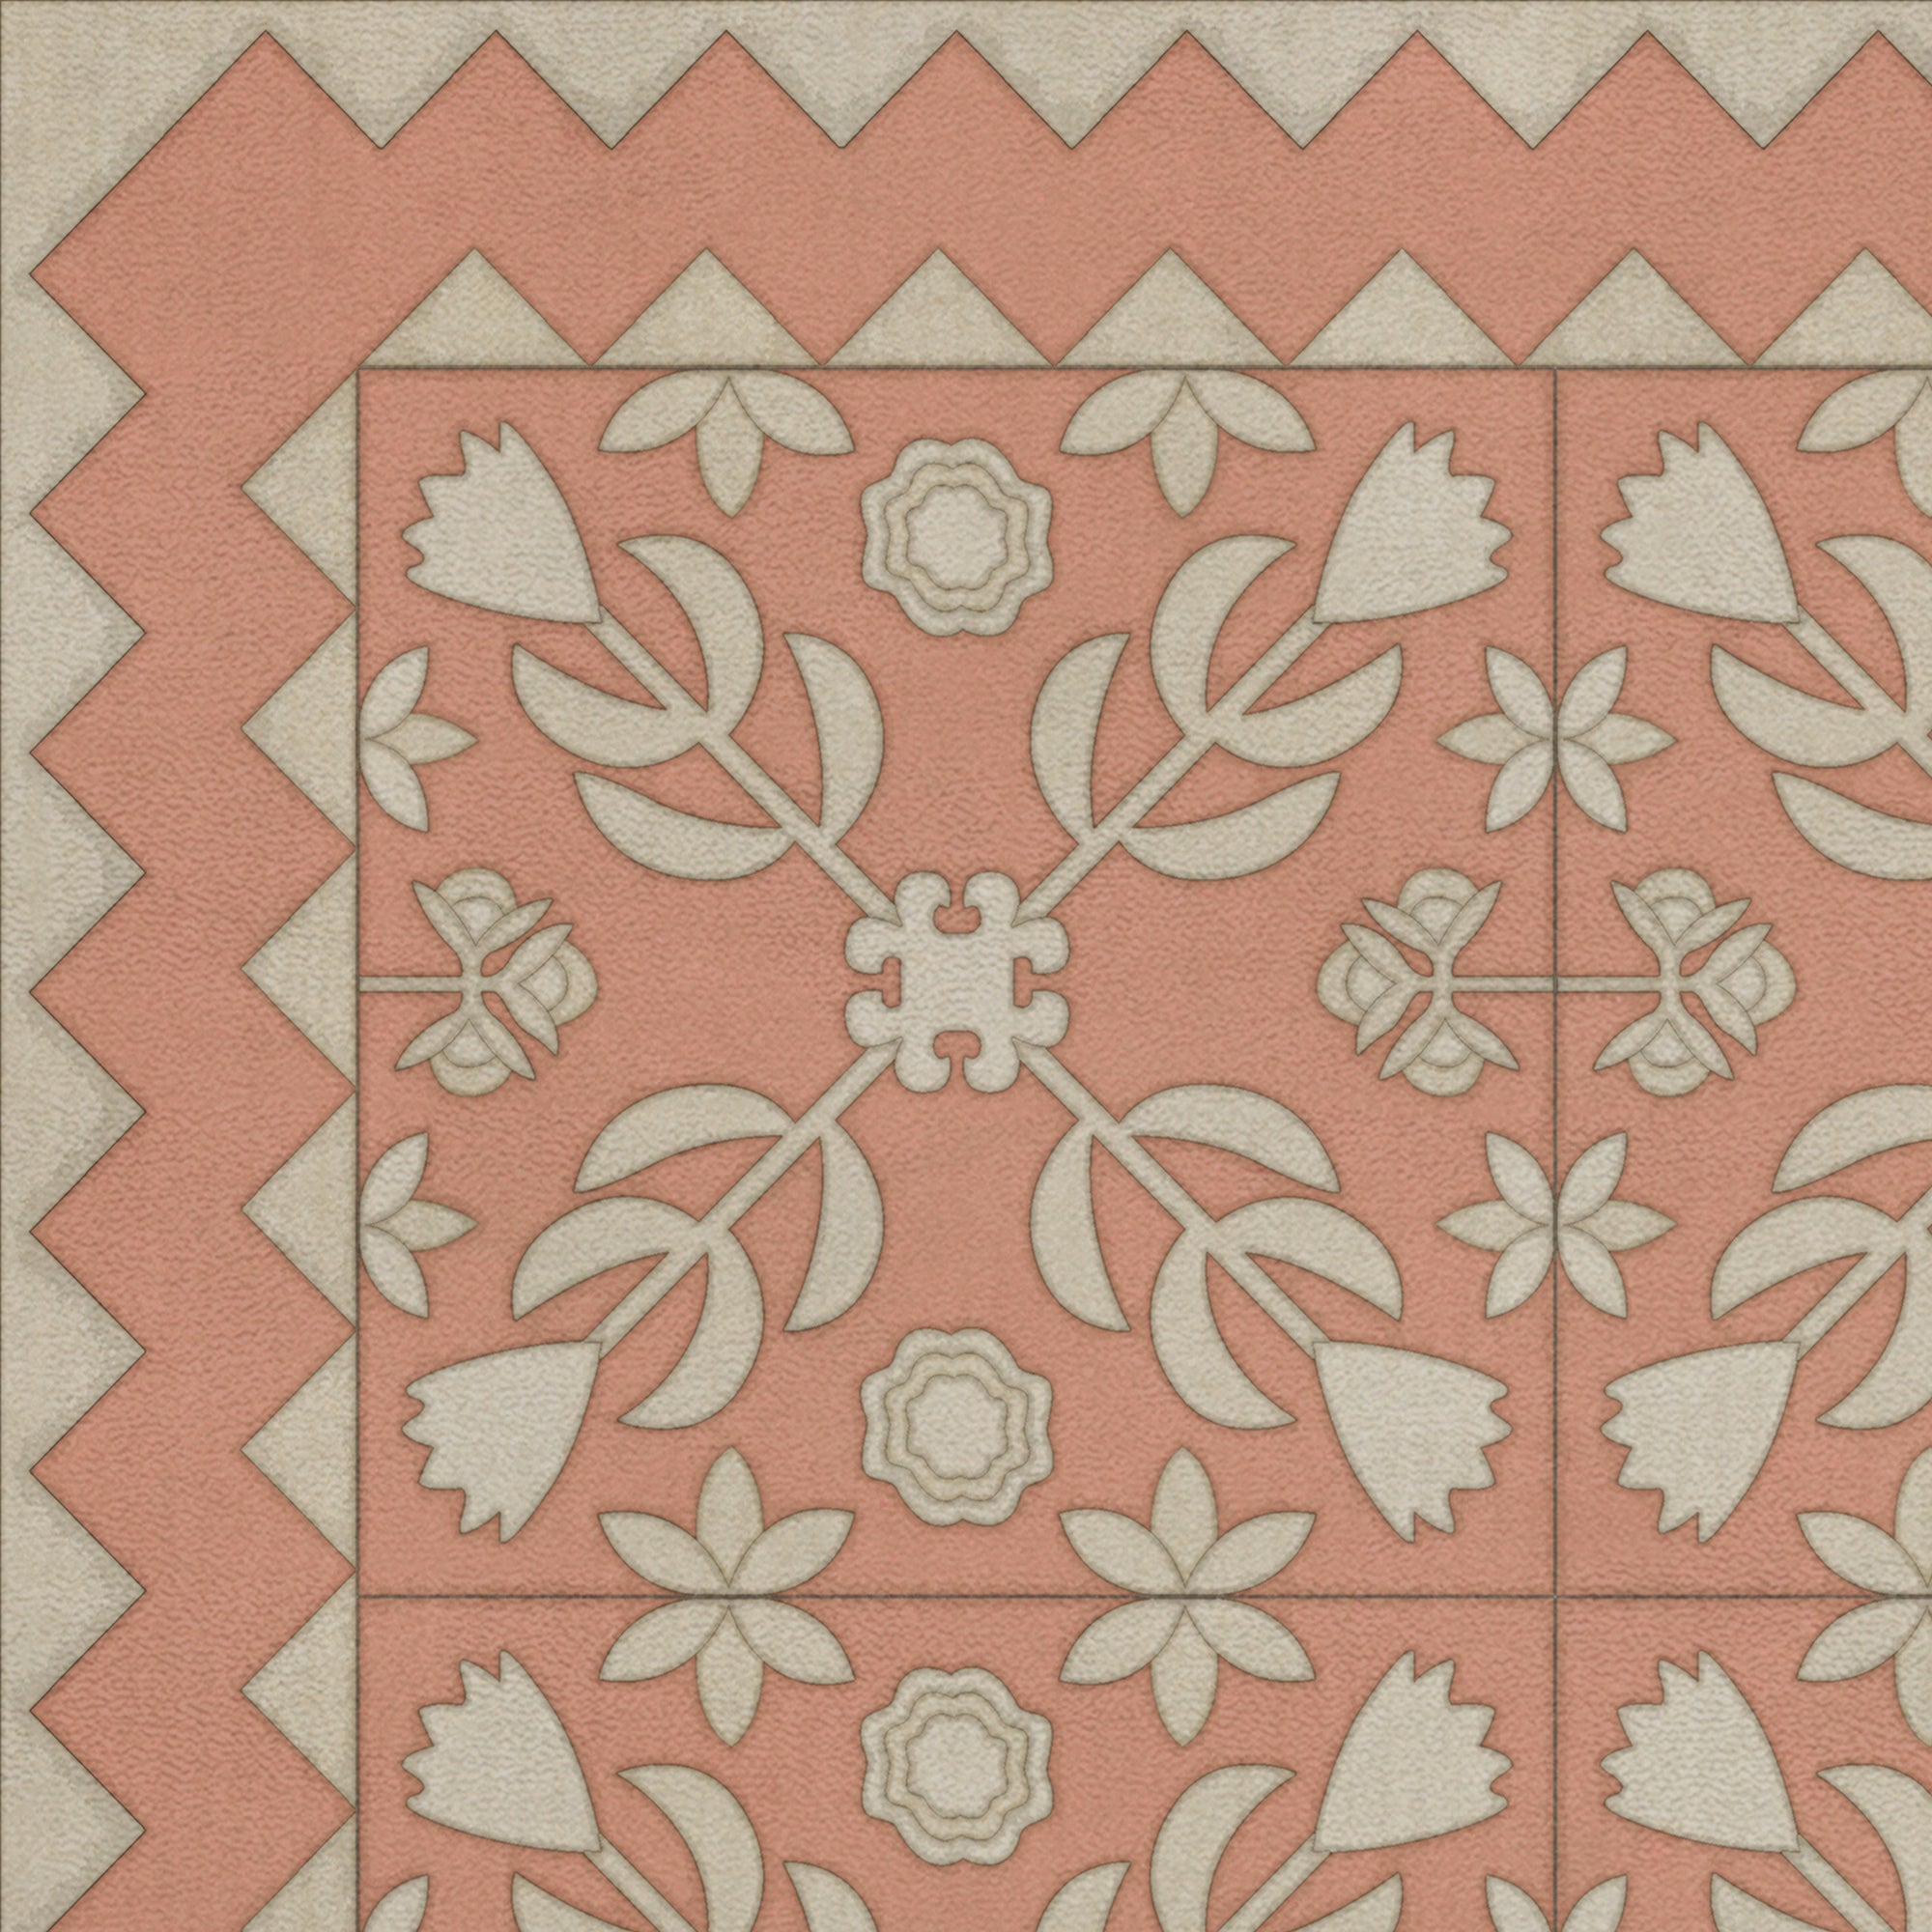 Folk Art Museum Floral Quilt Portrait Of Lady Vinyl Floor Cloth